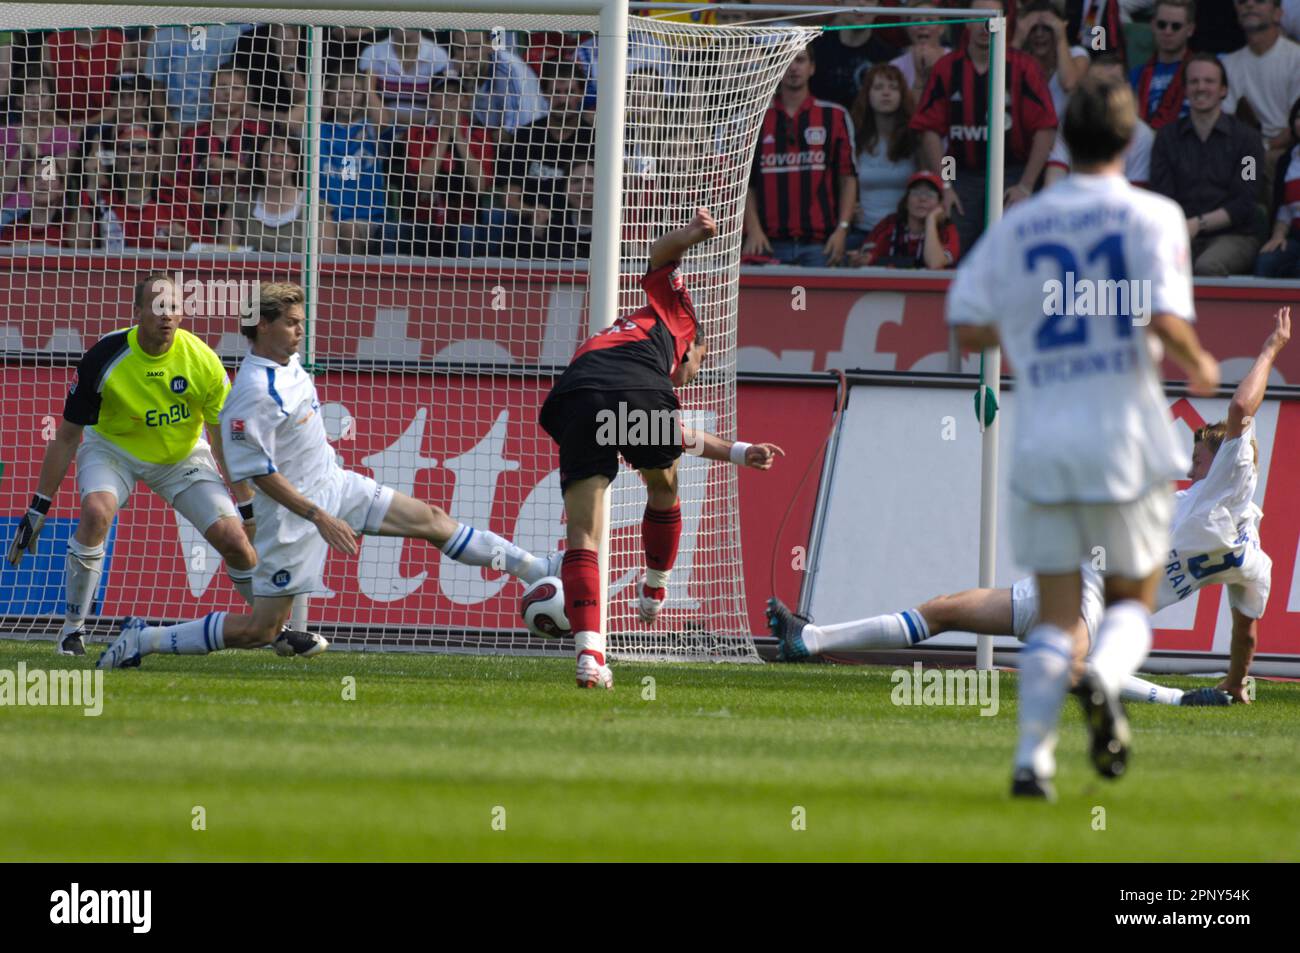 Theofanis Gekas schießt das Tor zum 3:0, gegen Torwart Markus Miller Fußball Bundesliga Bayer Leverkusen - Karlsruher SC, 25.8.2007 Stock Photo